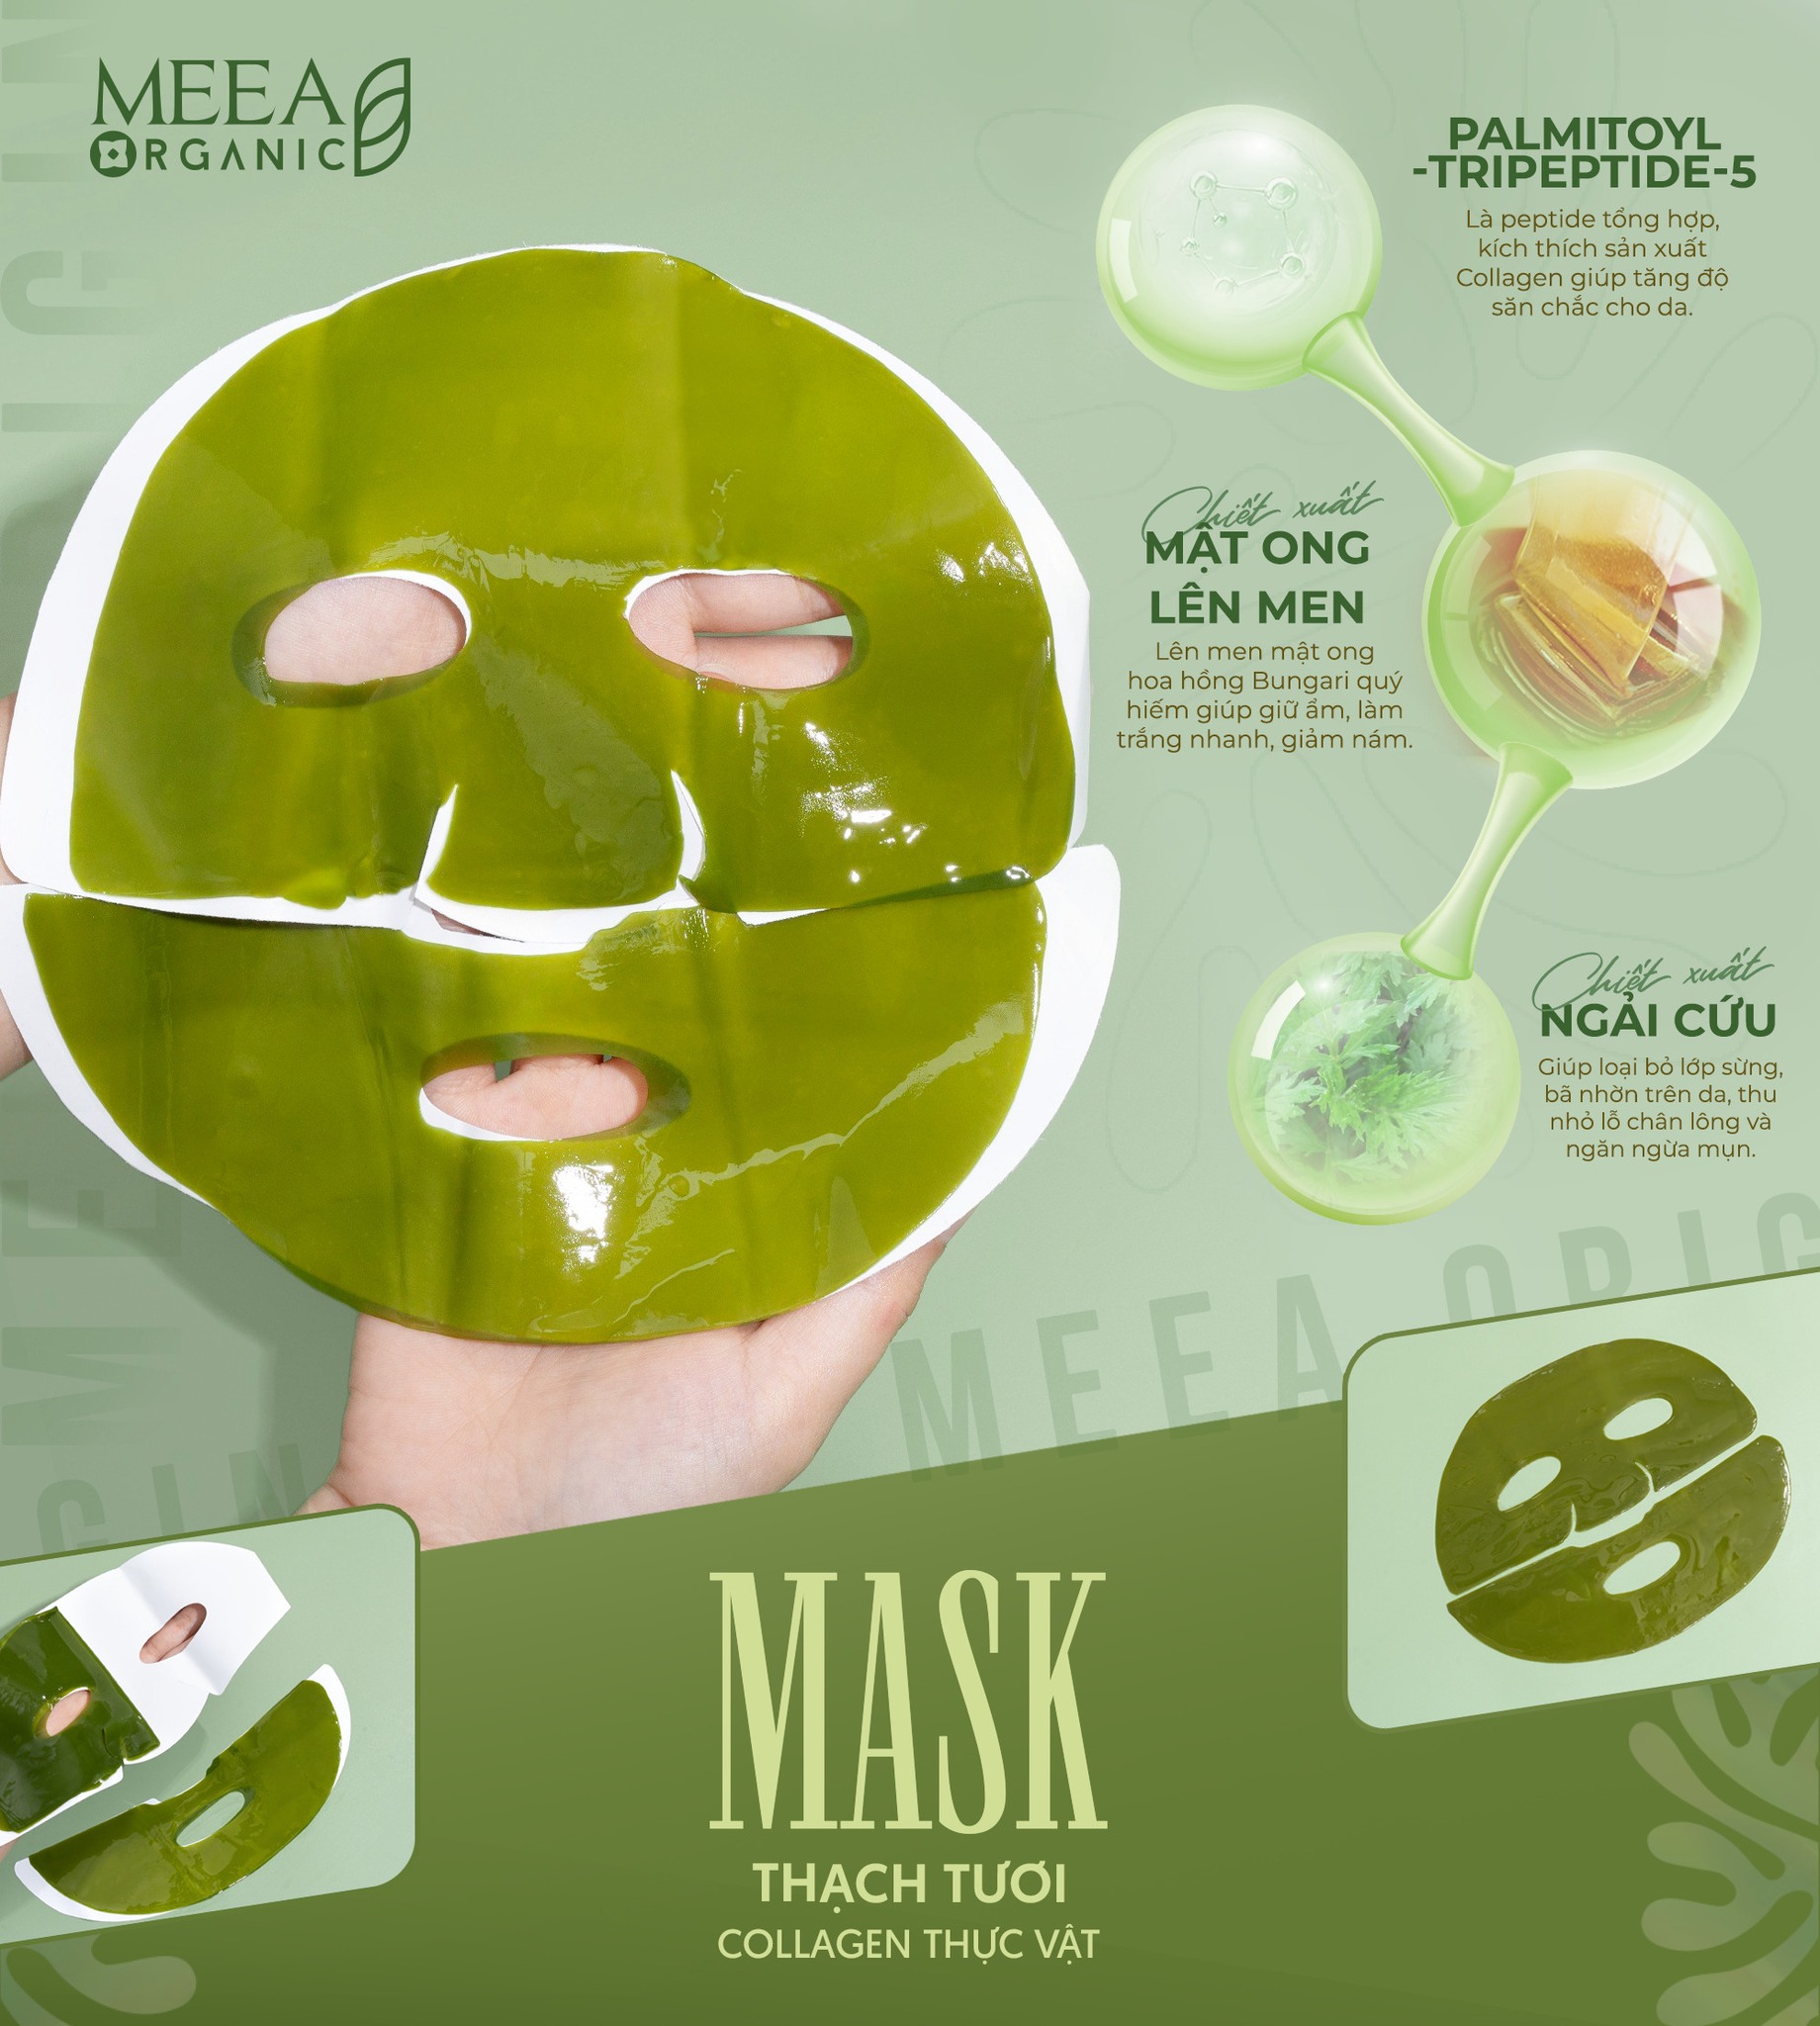 Mask Thạch Tươi Collagen Ngãi Cứu Mugwort Mask Meea Organic Chính Hãng